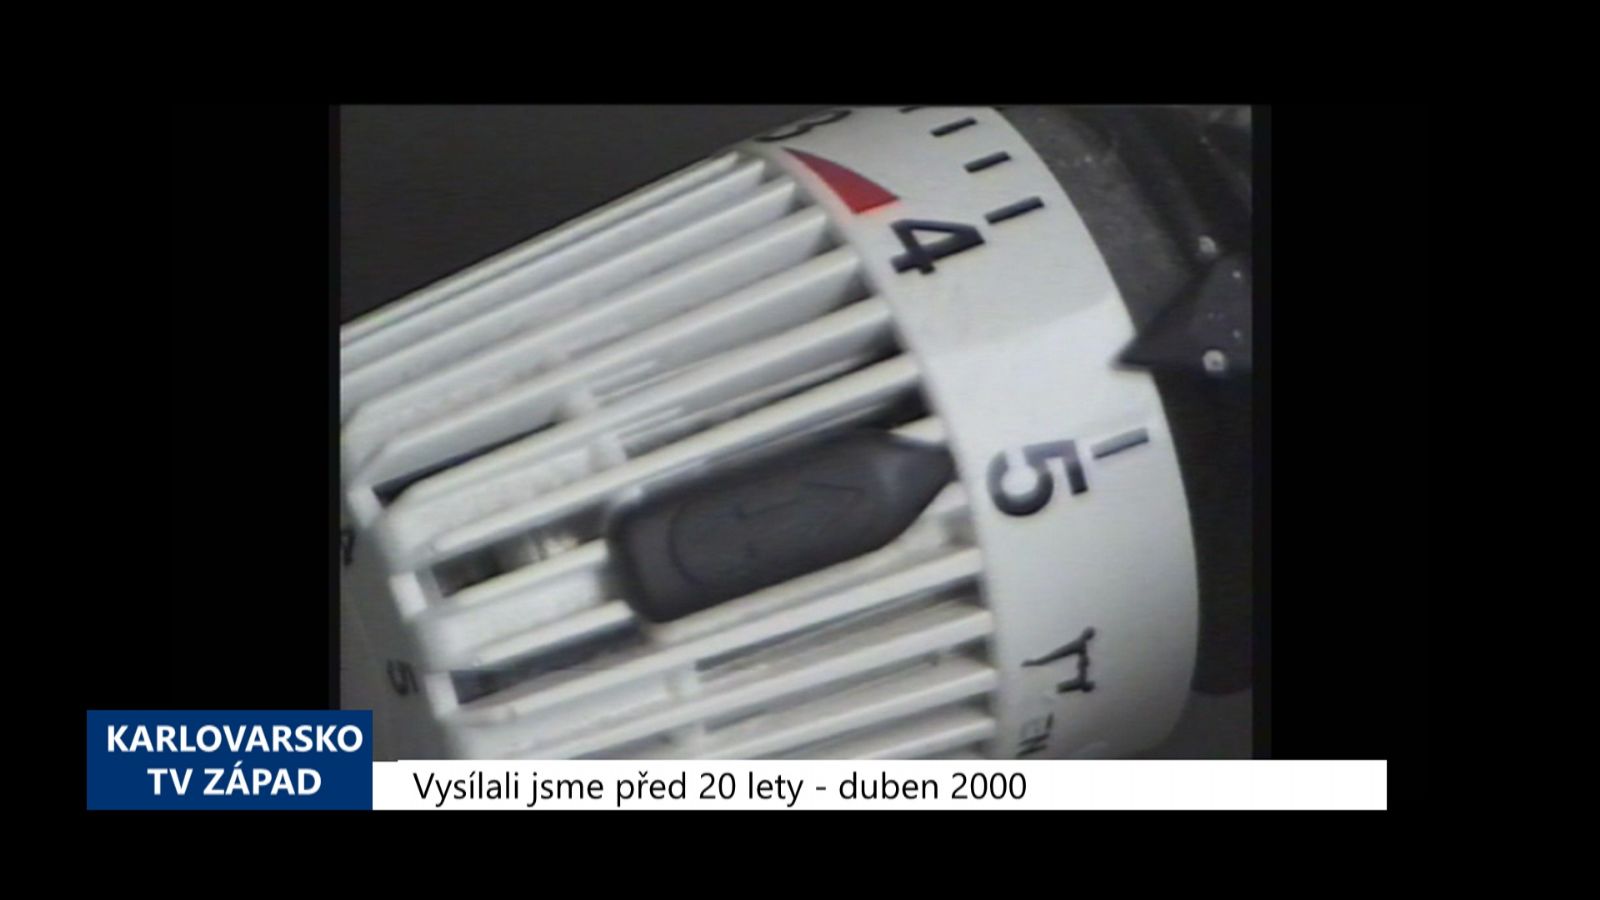 2000 – Cheb: Lidé dostanou zpět peníze za termoregulační ventily (TV Západ)